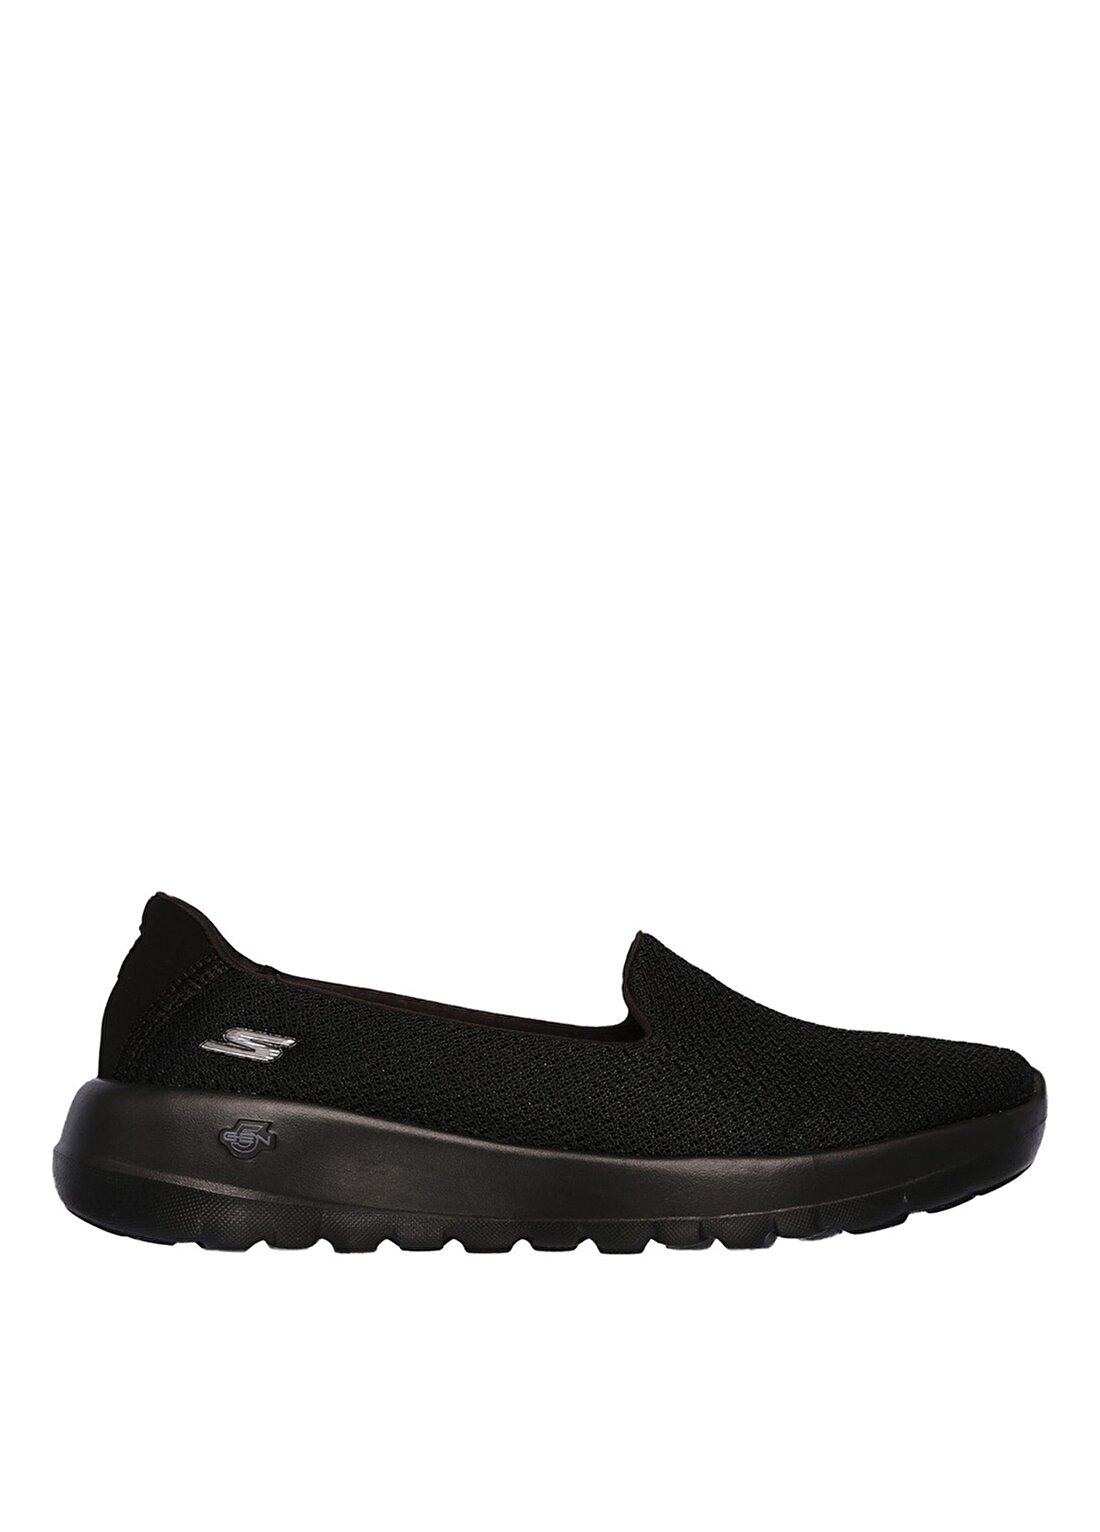 Skechers Go Walk Joy- Splendid Siyah Kadın Yürüyüş Ayakkabısı